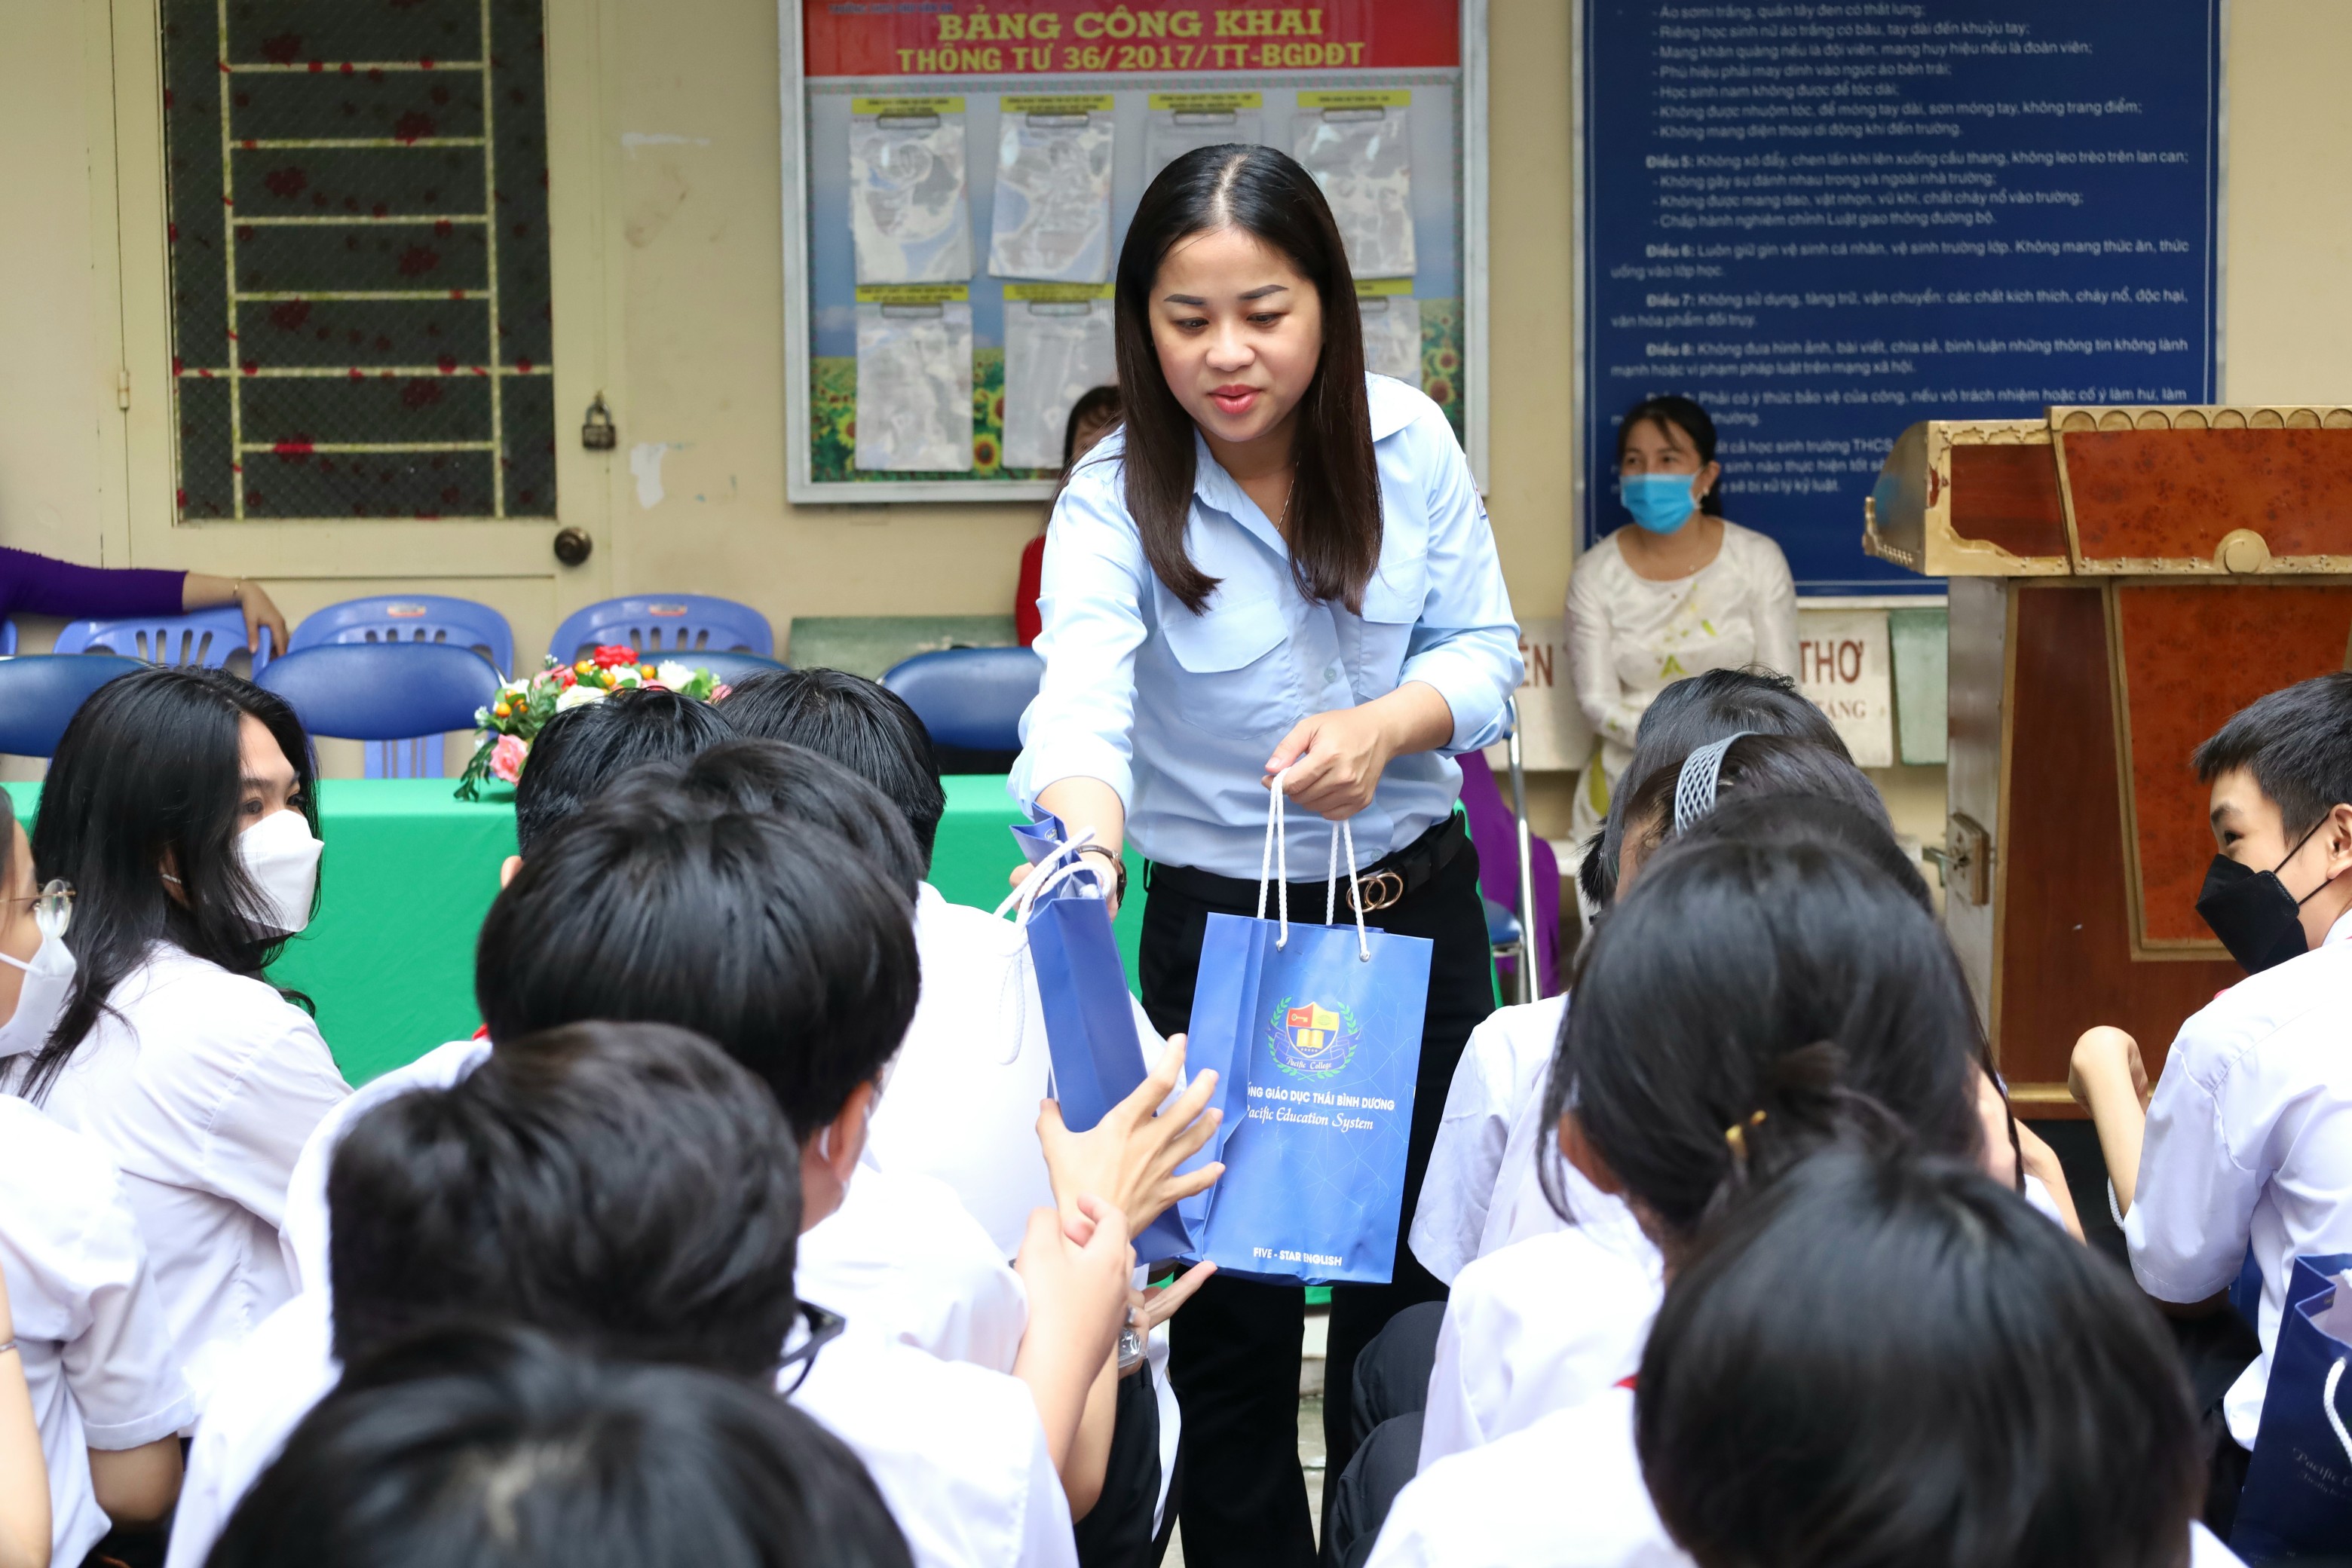 Chị Lư Thị Ngọc Anh - Bí thư Thành đoàn, Chủ tịch Hội đồng Đội TP. Cần Thơ tặng quà cho các em học sinh tham gia chương trình.